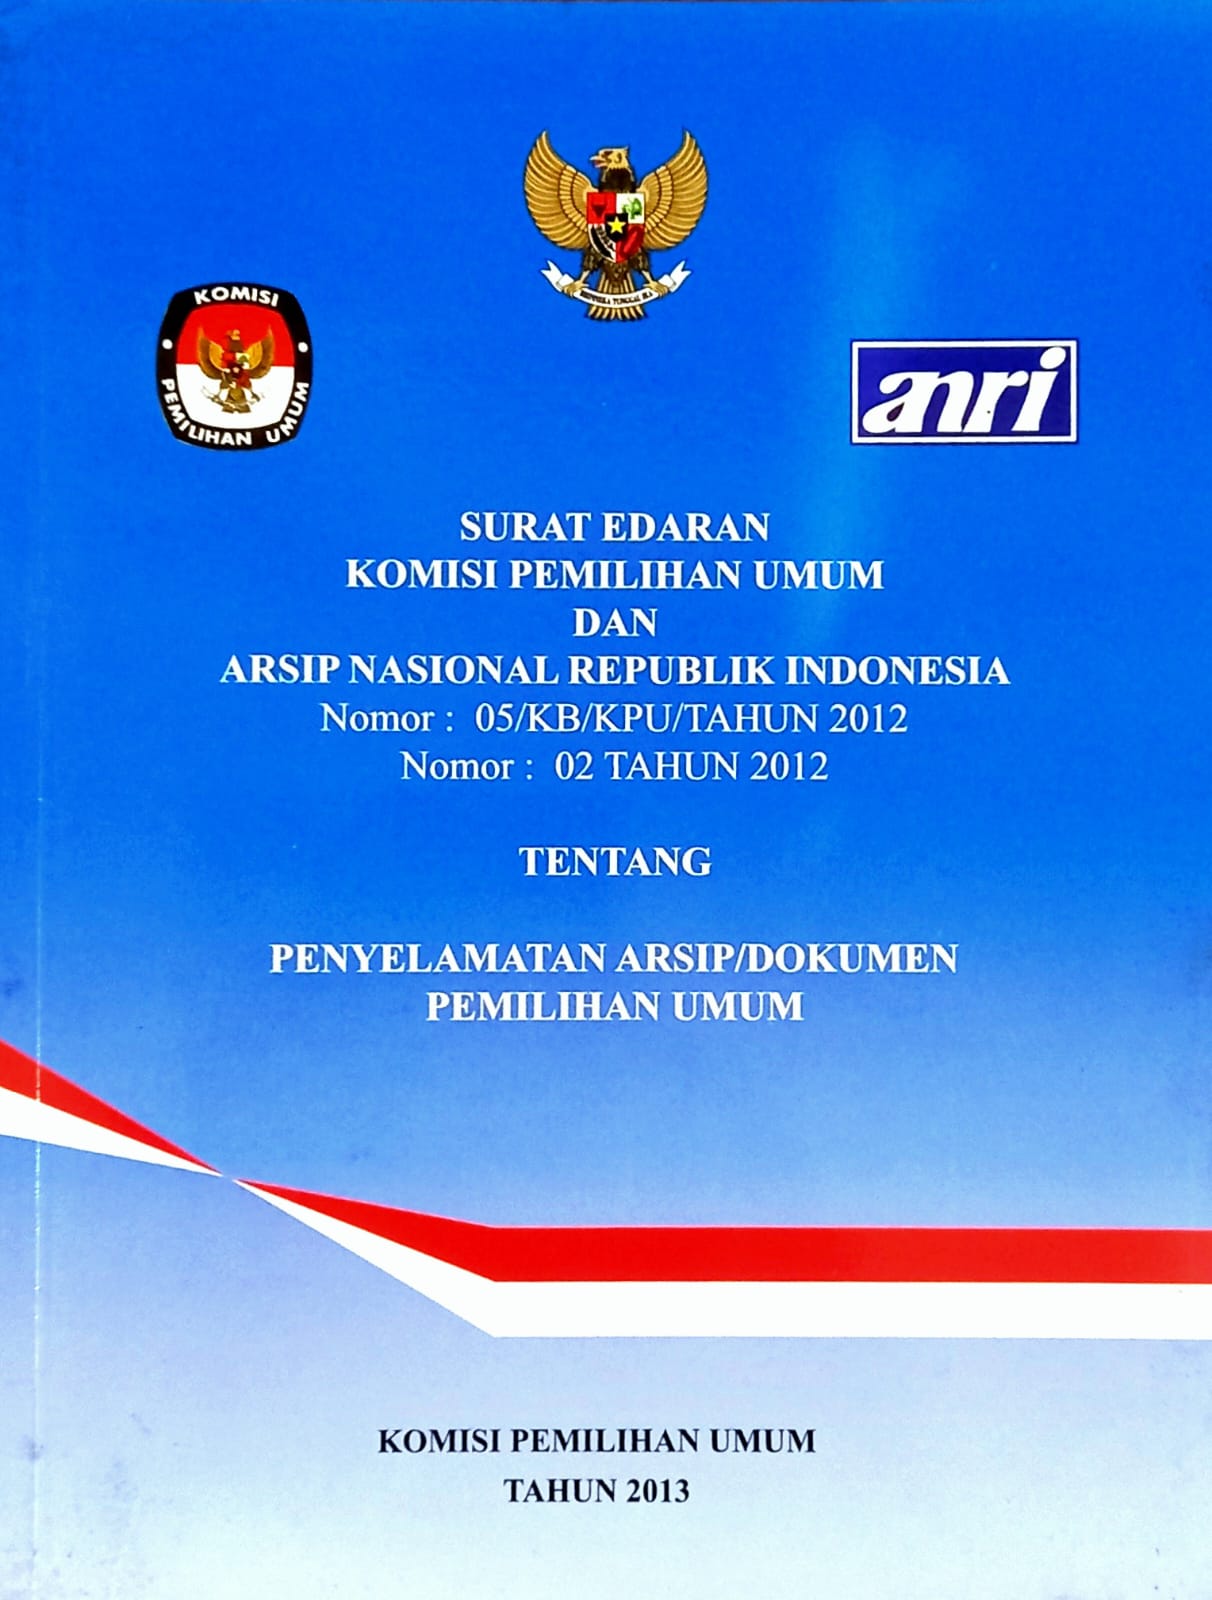 SURAT EDARAN KPU NOMOR 05/KB/KPU/TAHUN 2012, ARSIP NASIONAL REPUBLIK INDONESIA NOMOR 02 TAHUN 2012